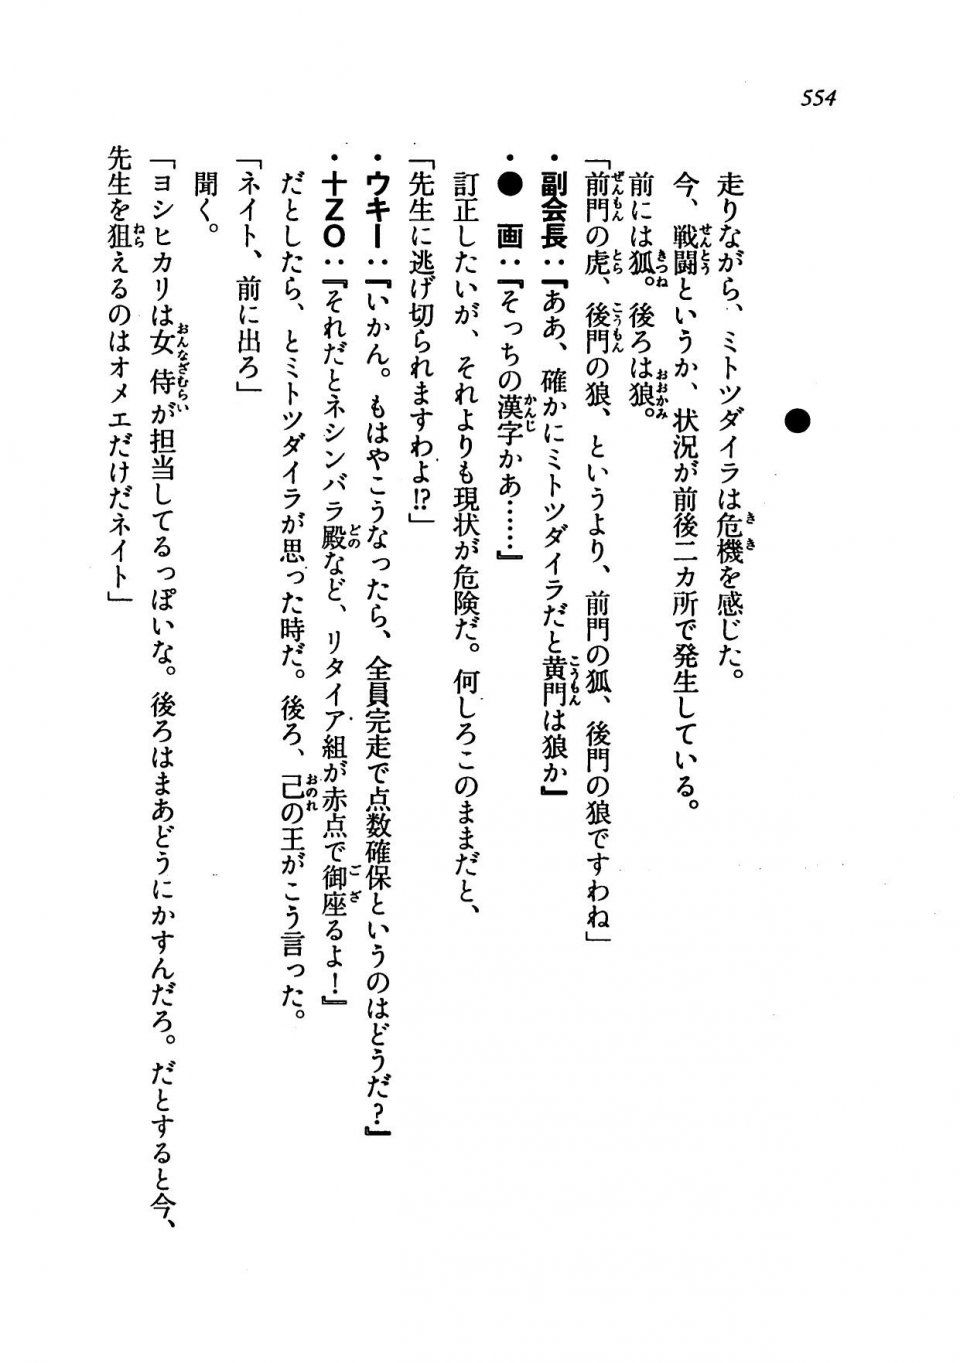 Kyoukai Senjou no Horizon LN Vol 19(8A) - Photo #554